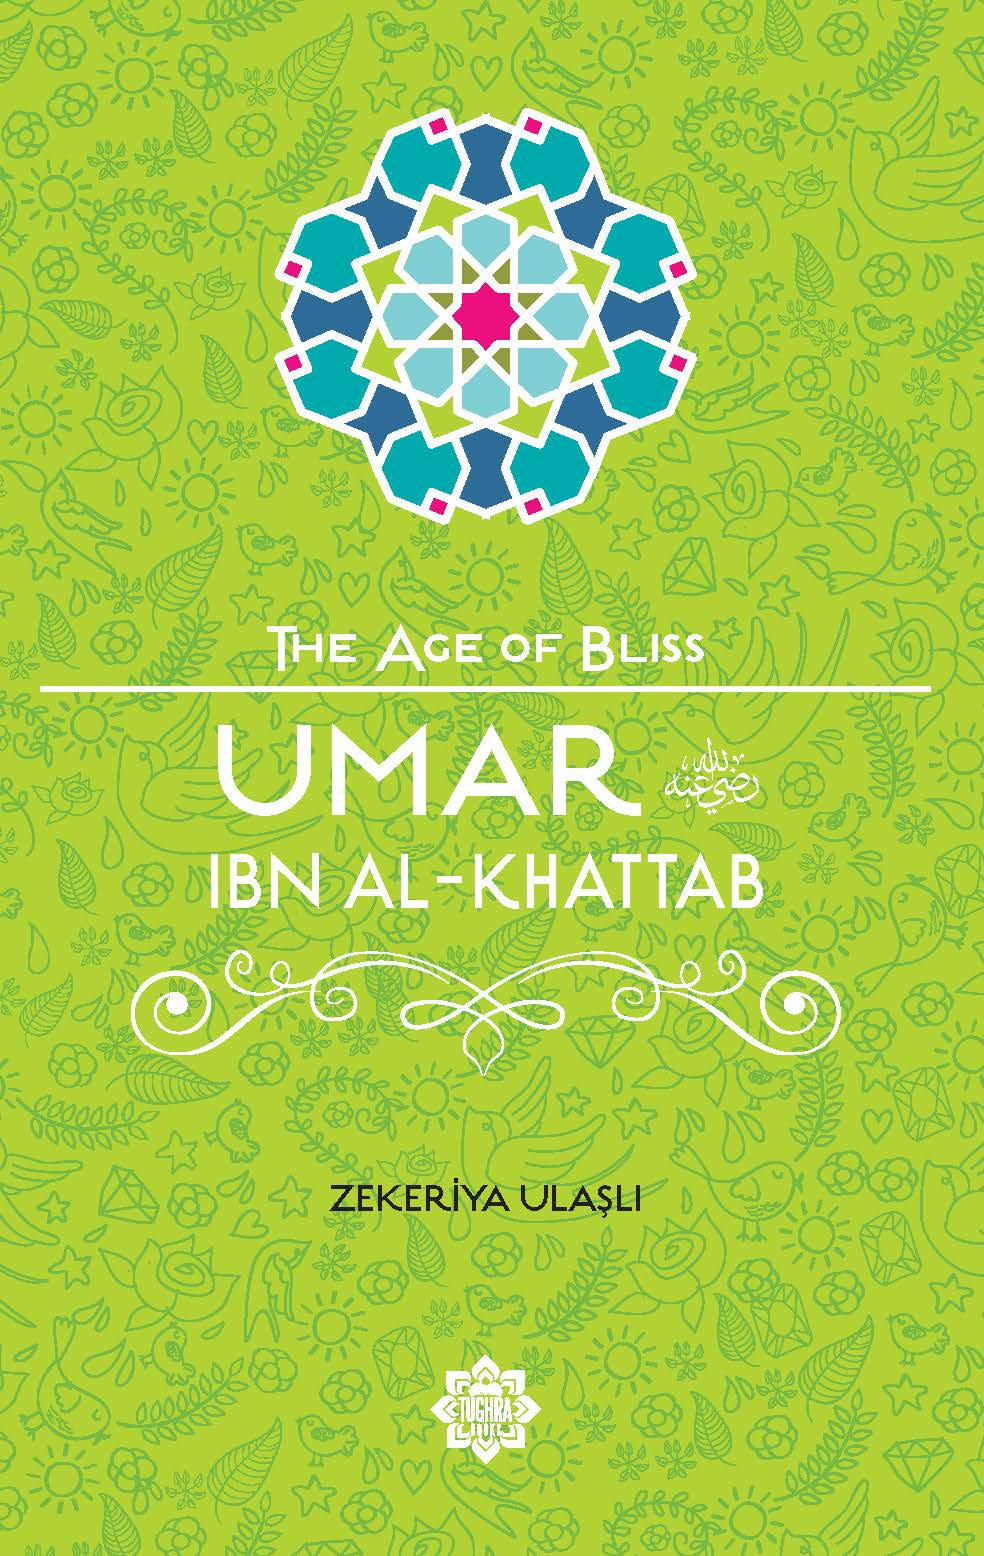 Umar ibn Al-Khattab – The Age of Bliss Series